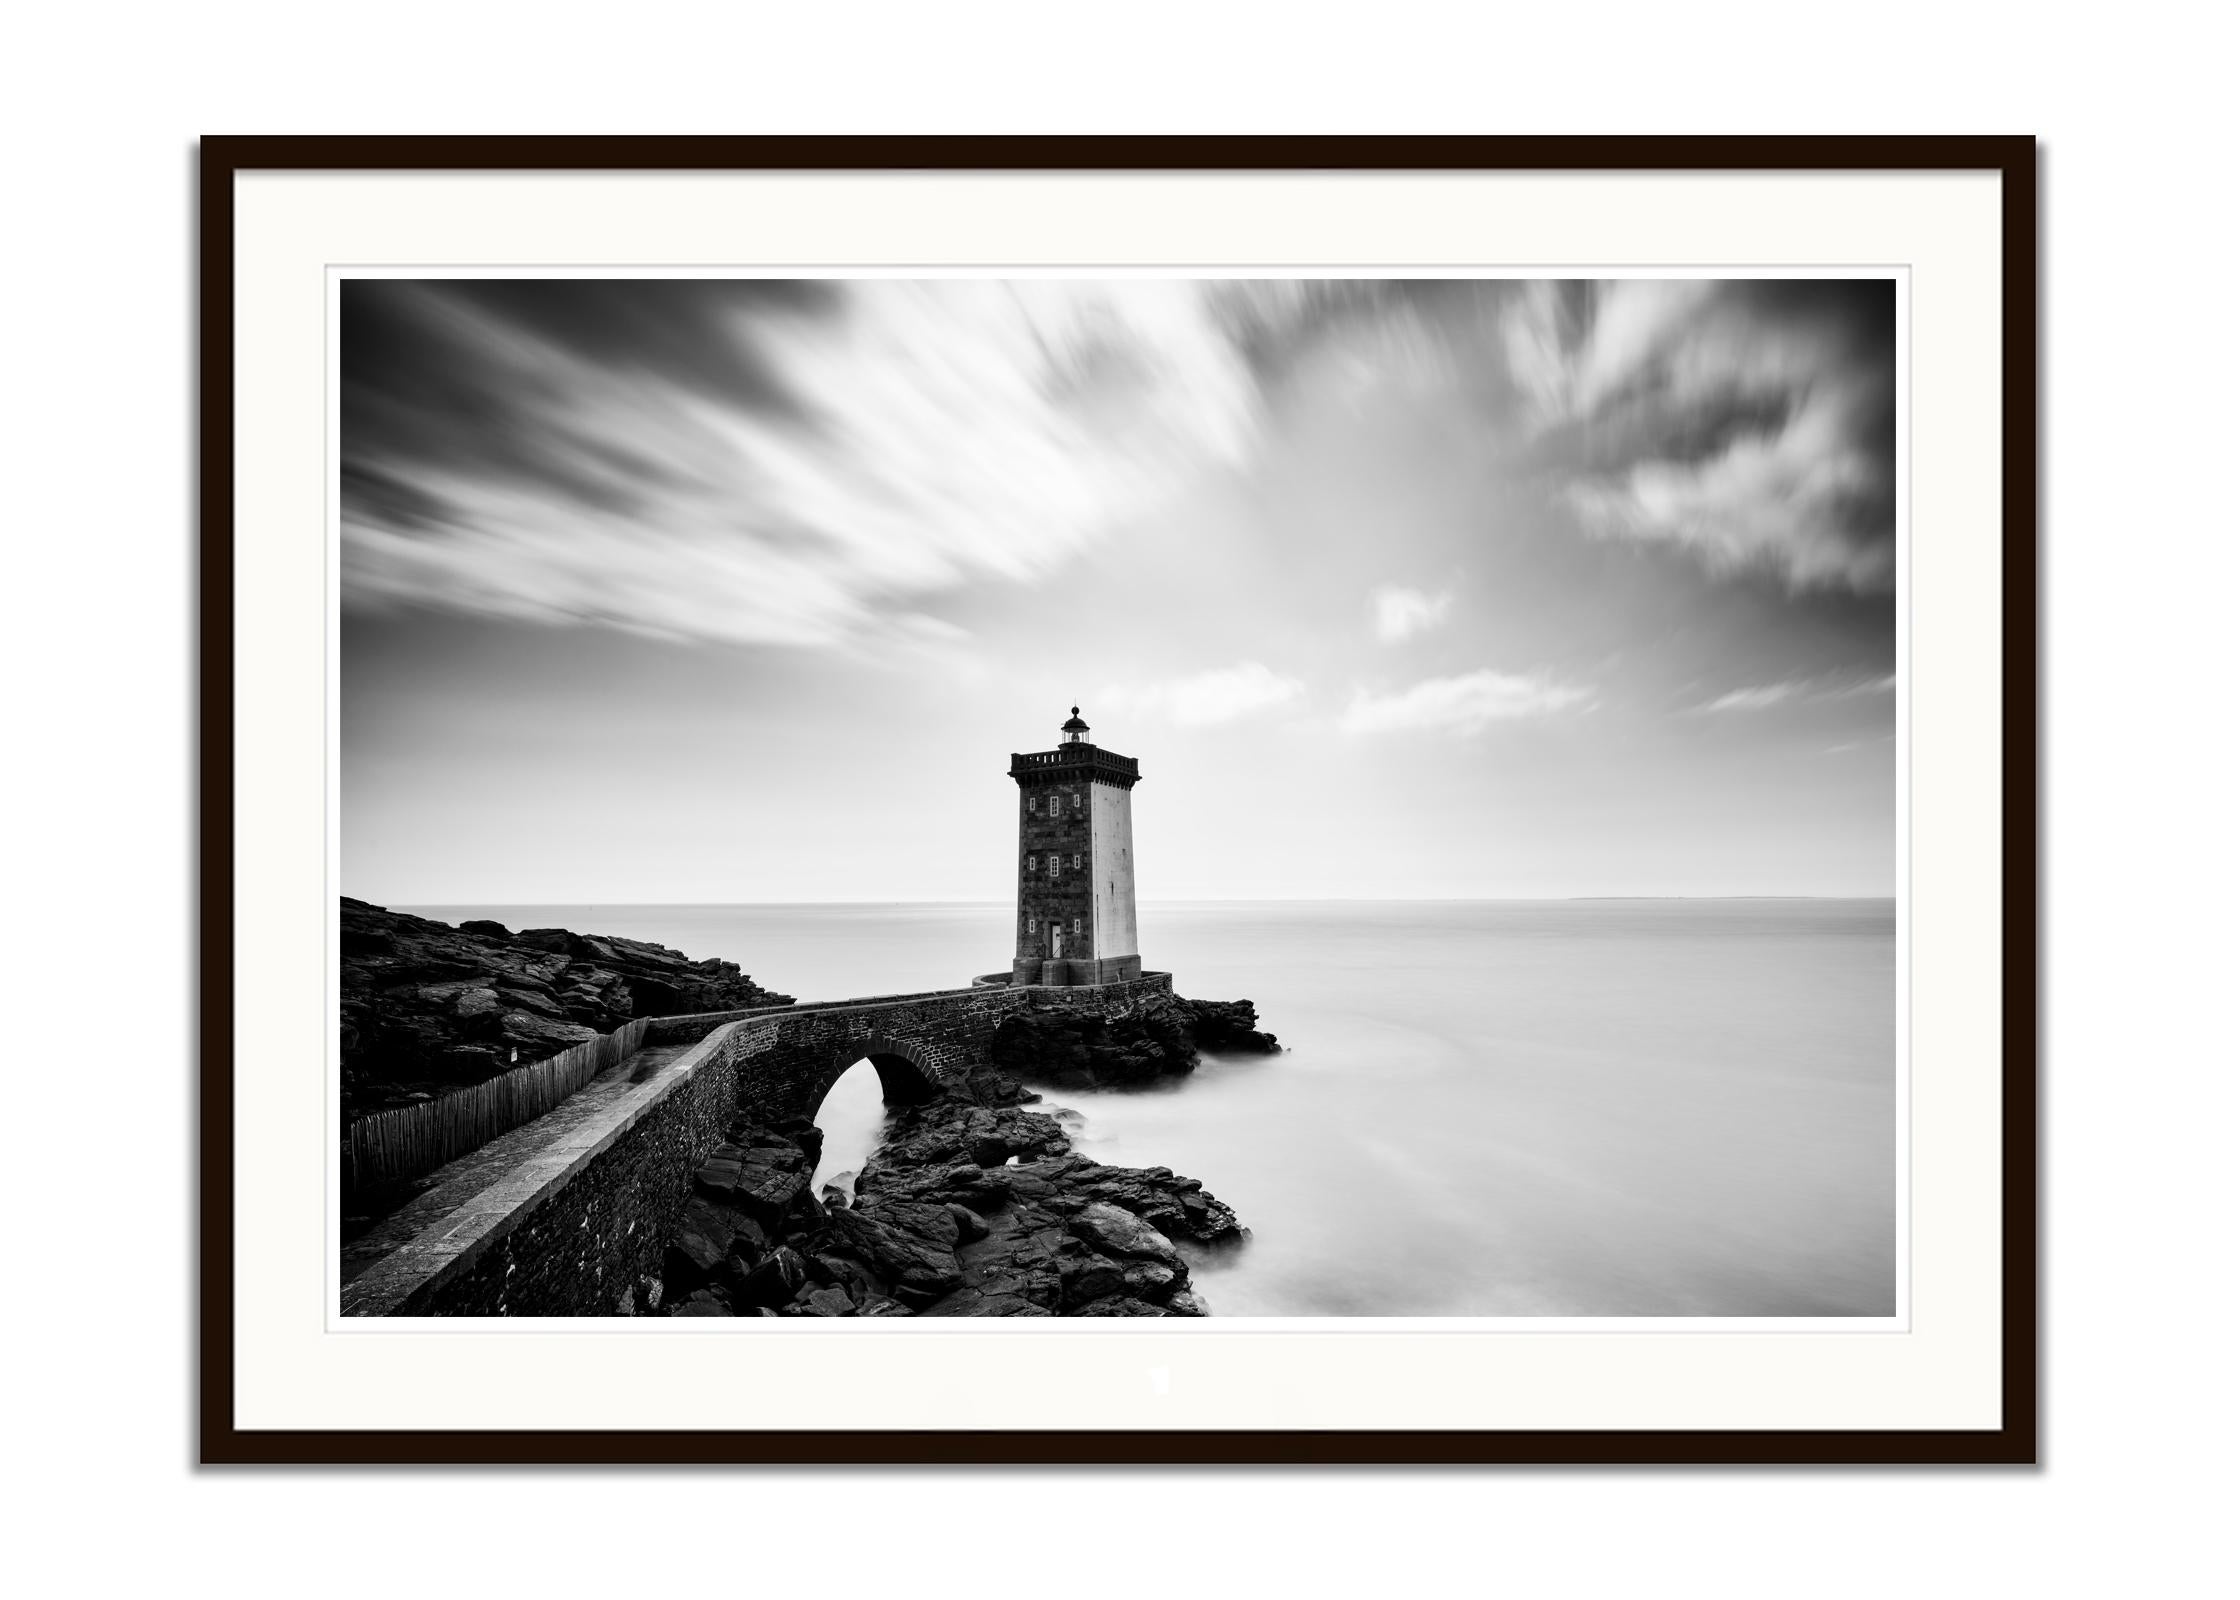 Leuchtturm, Kermorvan, Atlantik, Frankreich, schwarz-weiß Landschaftsfotografie (Grau), Landscape Photograph, von Gerald Berghammer